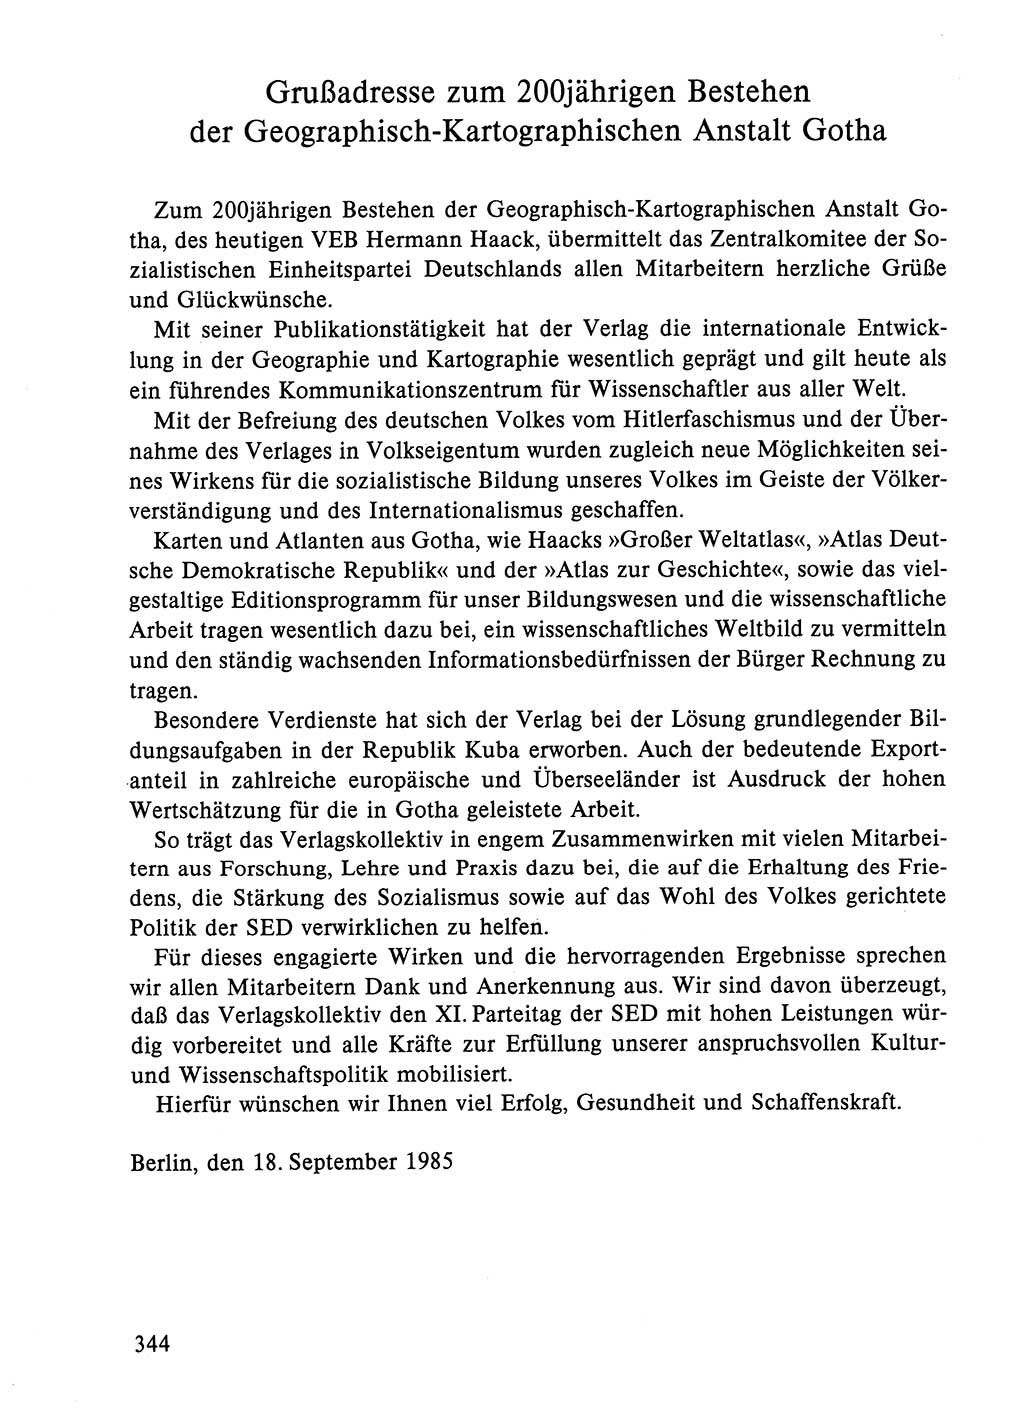 Dokumente der Sozialistischen Einheitspartei Deutschlands (SED) [Deutsche Demokratische Republik (DDR)] 1984-1985, Seite 344 (Dok. SED DDR 1984-1985, S. 344)